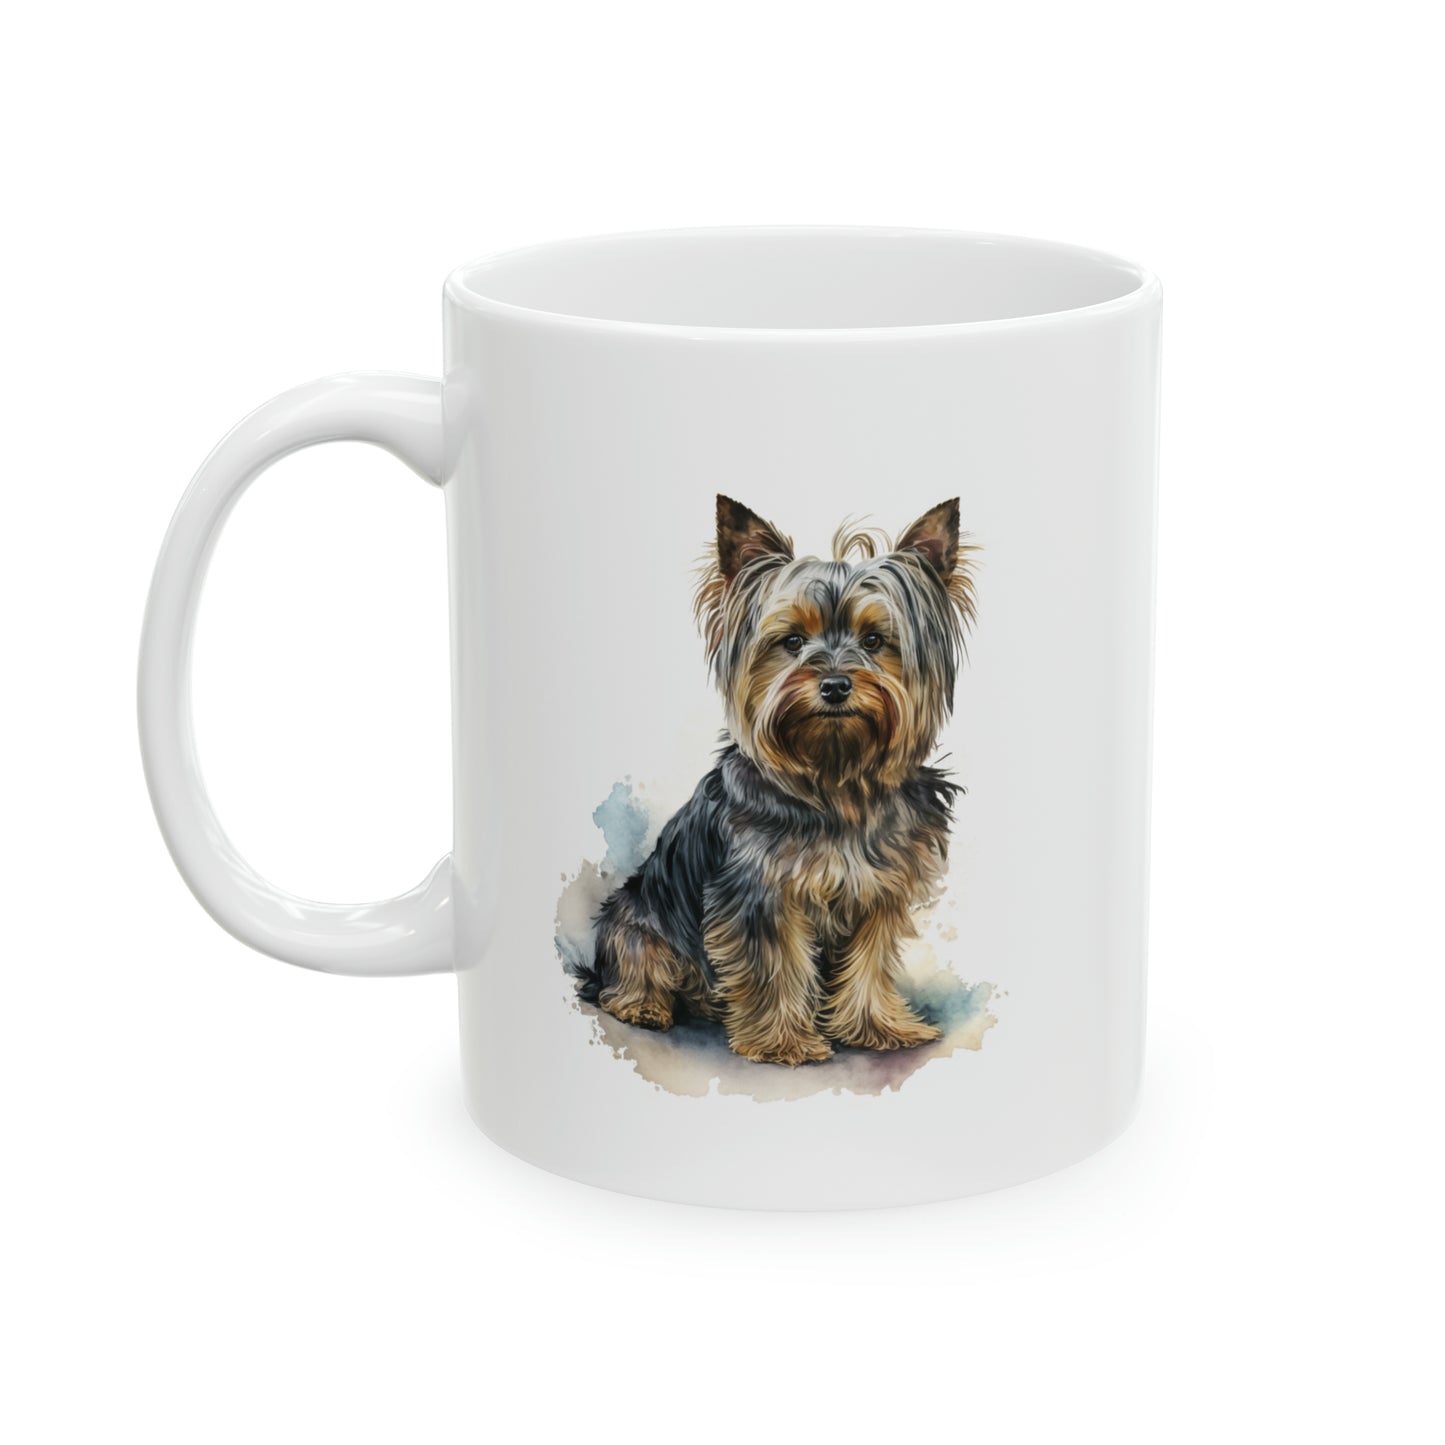 Yorkshire Terrier "Love Language" Ceramic Mug 11oz